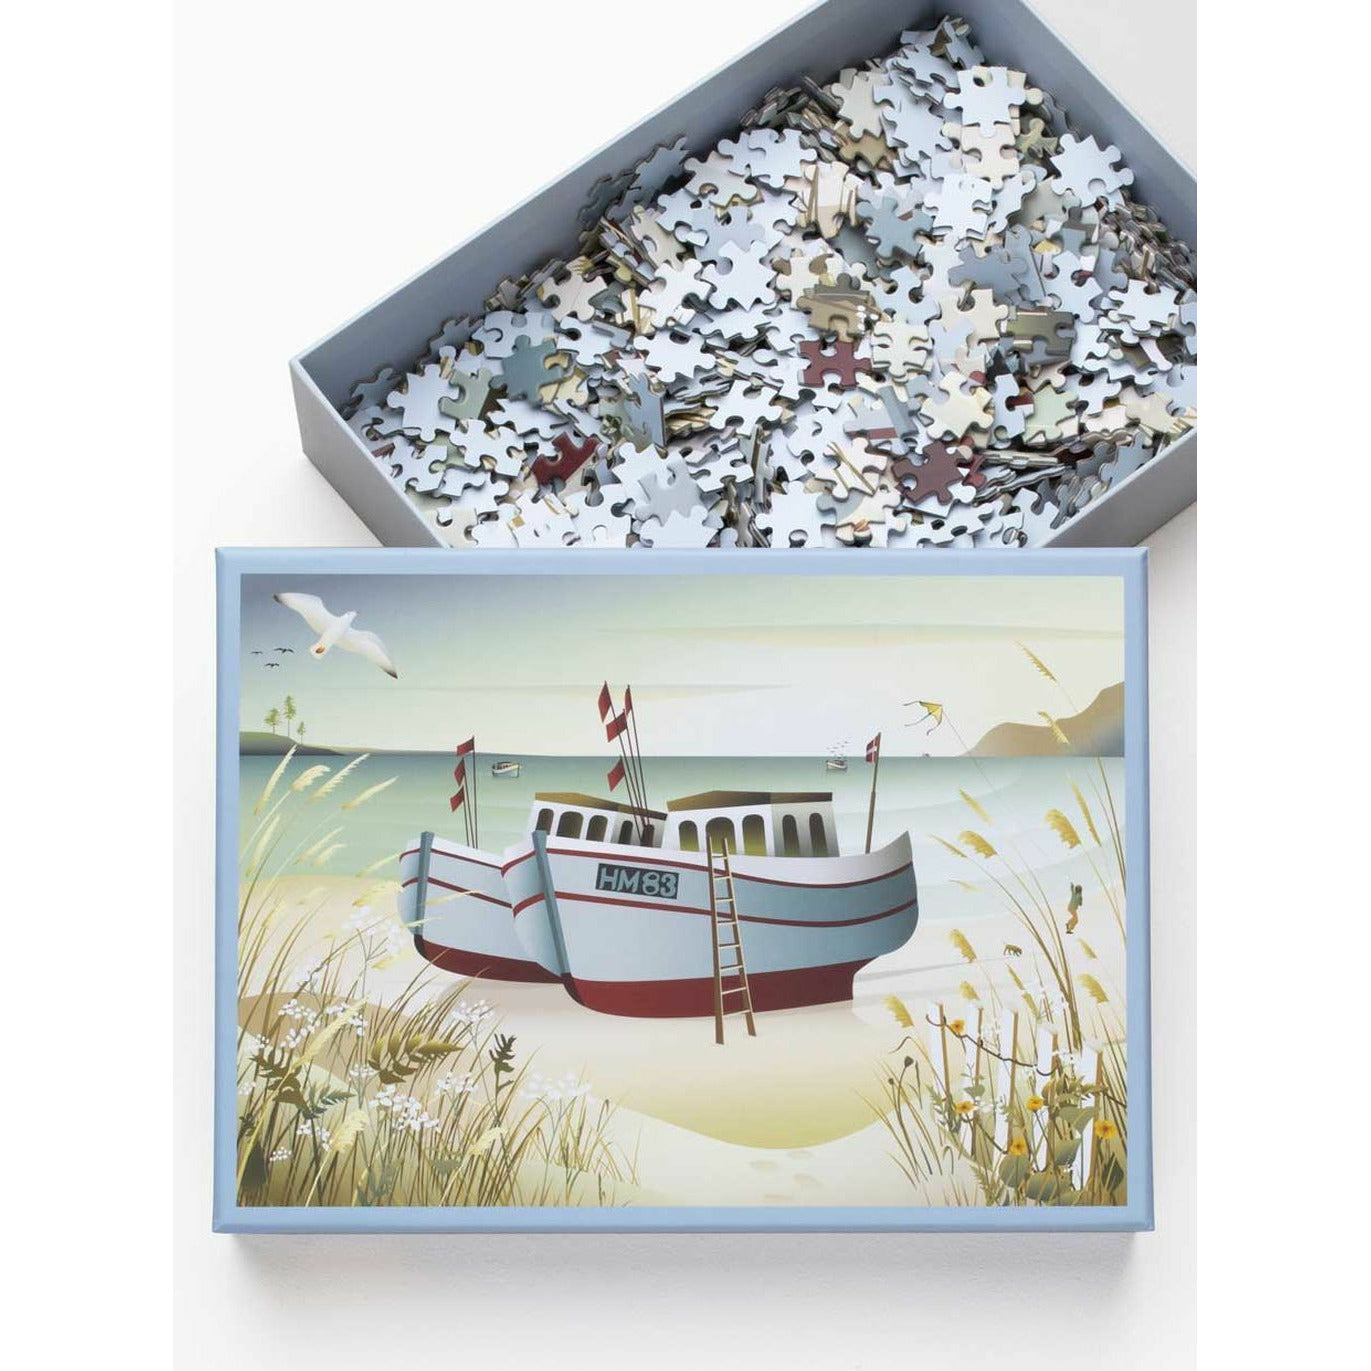 Vissevasse rybářské lodě puzzle s 1000 kusy